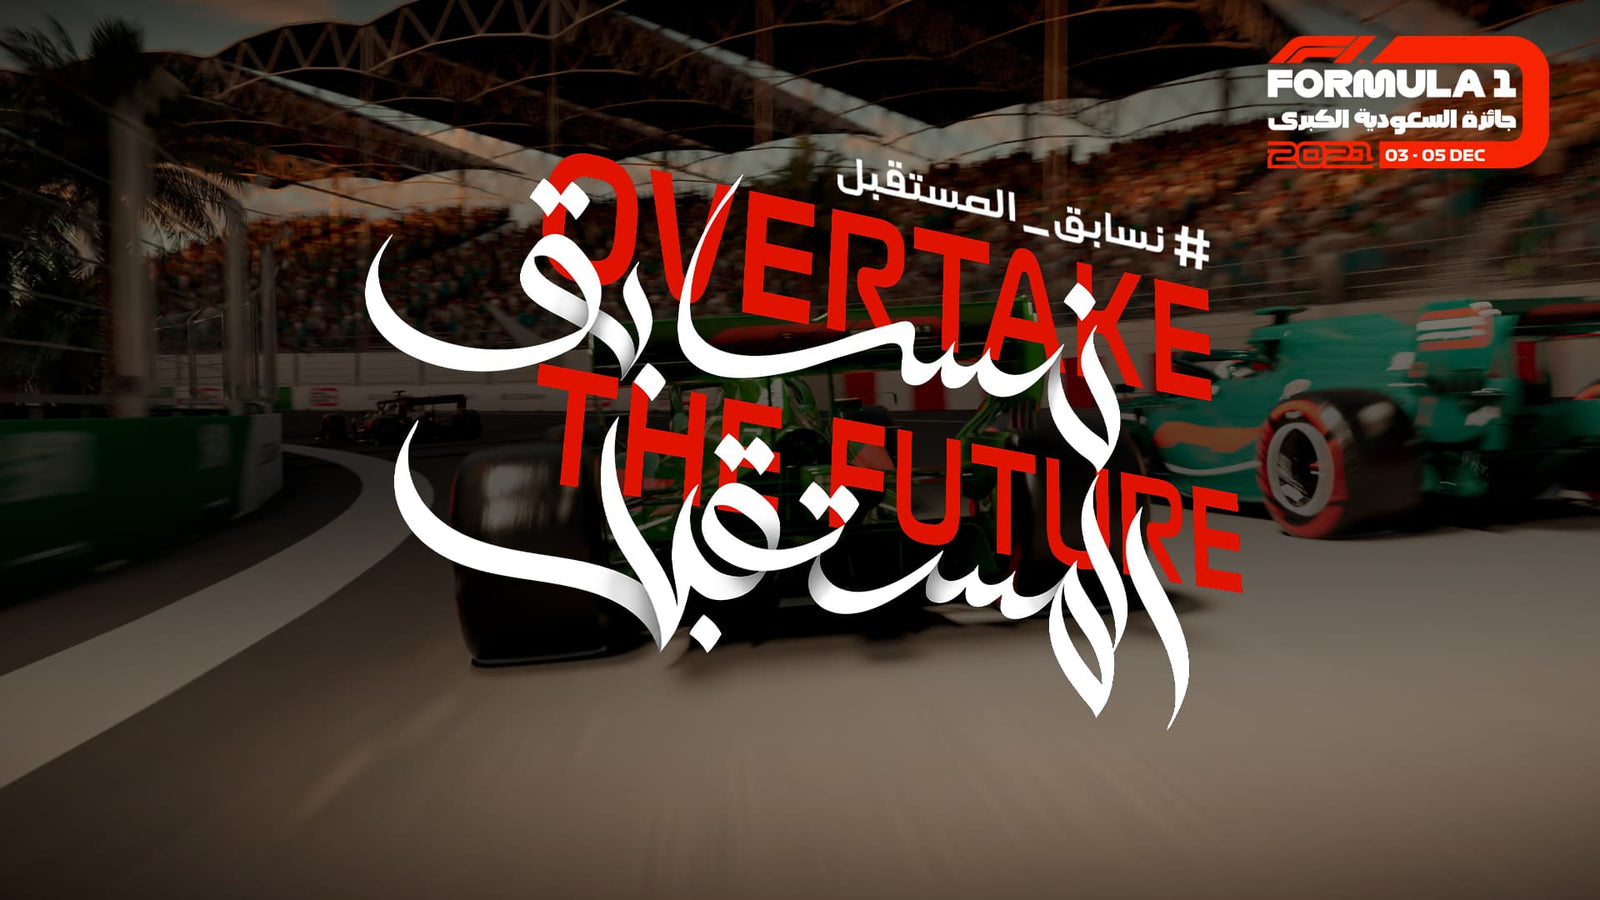 Saudi Arabia Long-term Plan for Formula 1 🇸🇦 - Fueler store